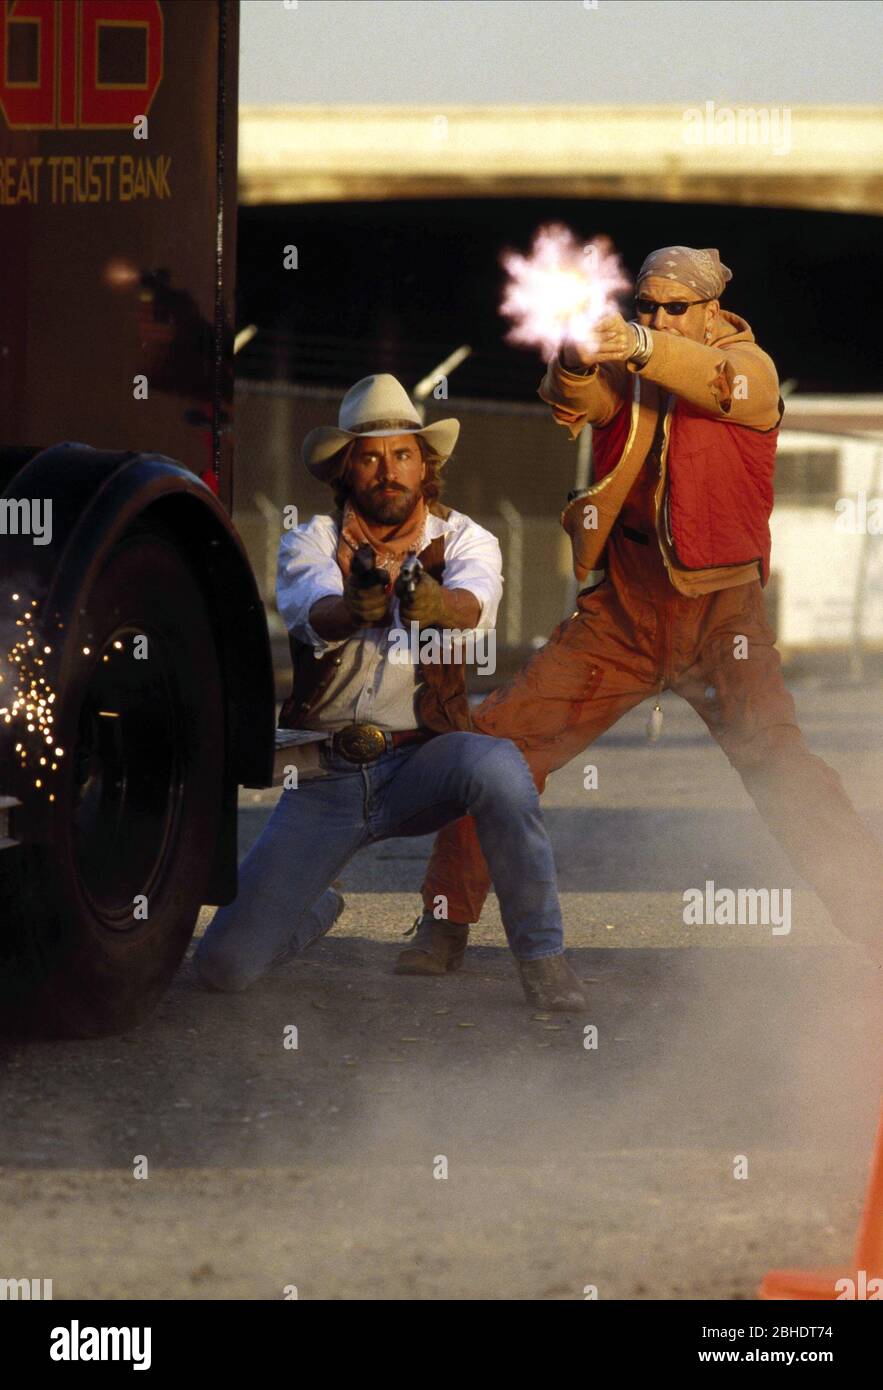 Marlboro Cowboy Stockfotos Und Bilder Kaufen Seite 2 Alamy